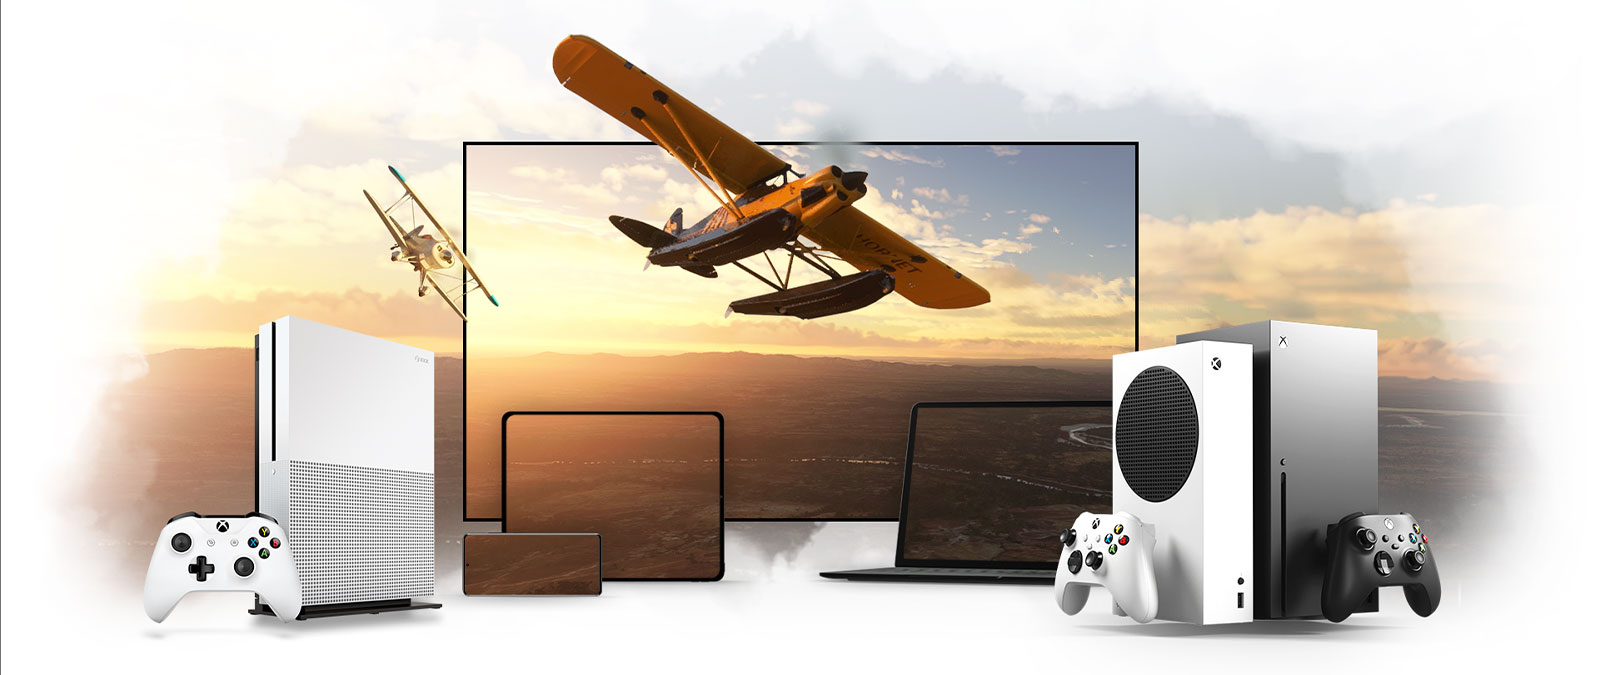 Un alignement d’appareils y compris un téléviseur, une Xbox One et une Xbox Series X, un avion à hélices vole vers l’horizon éclairé par le soleil.